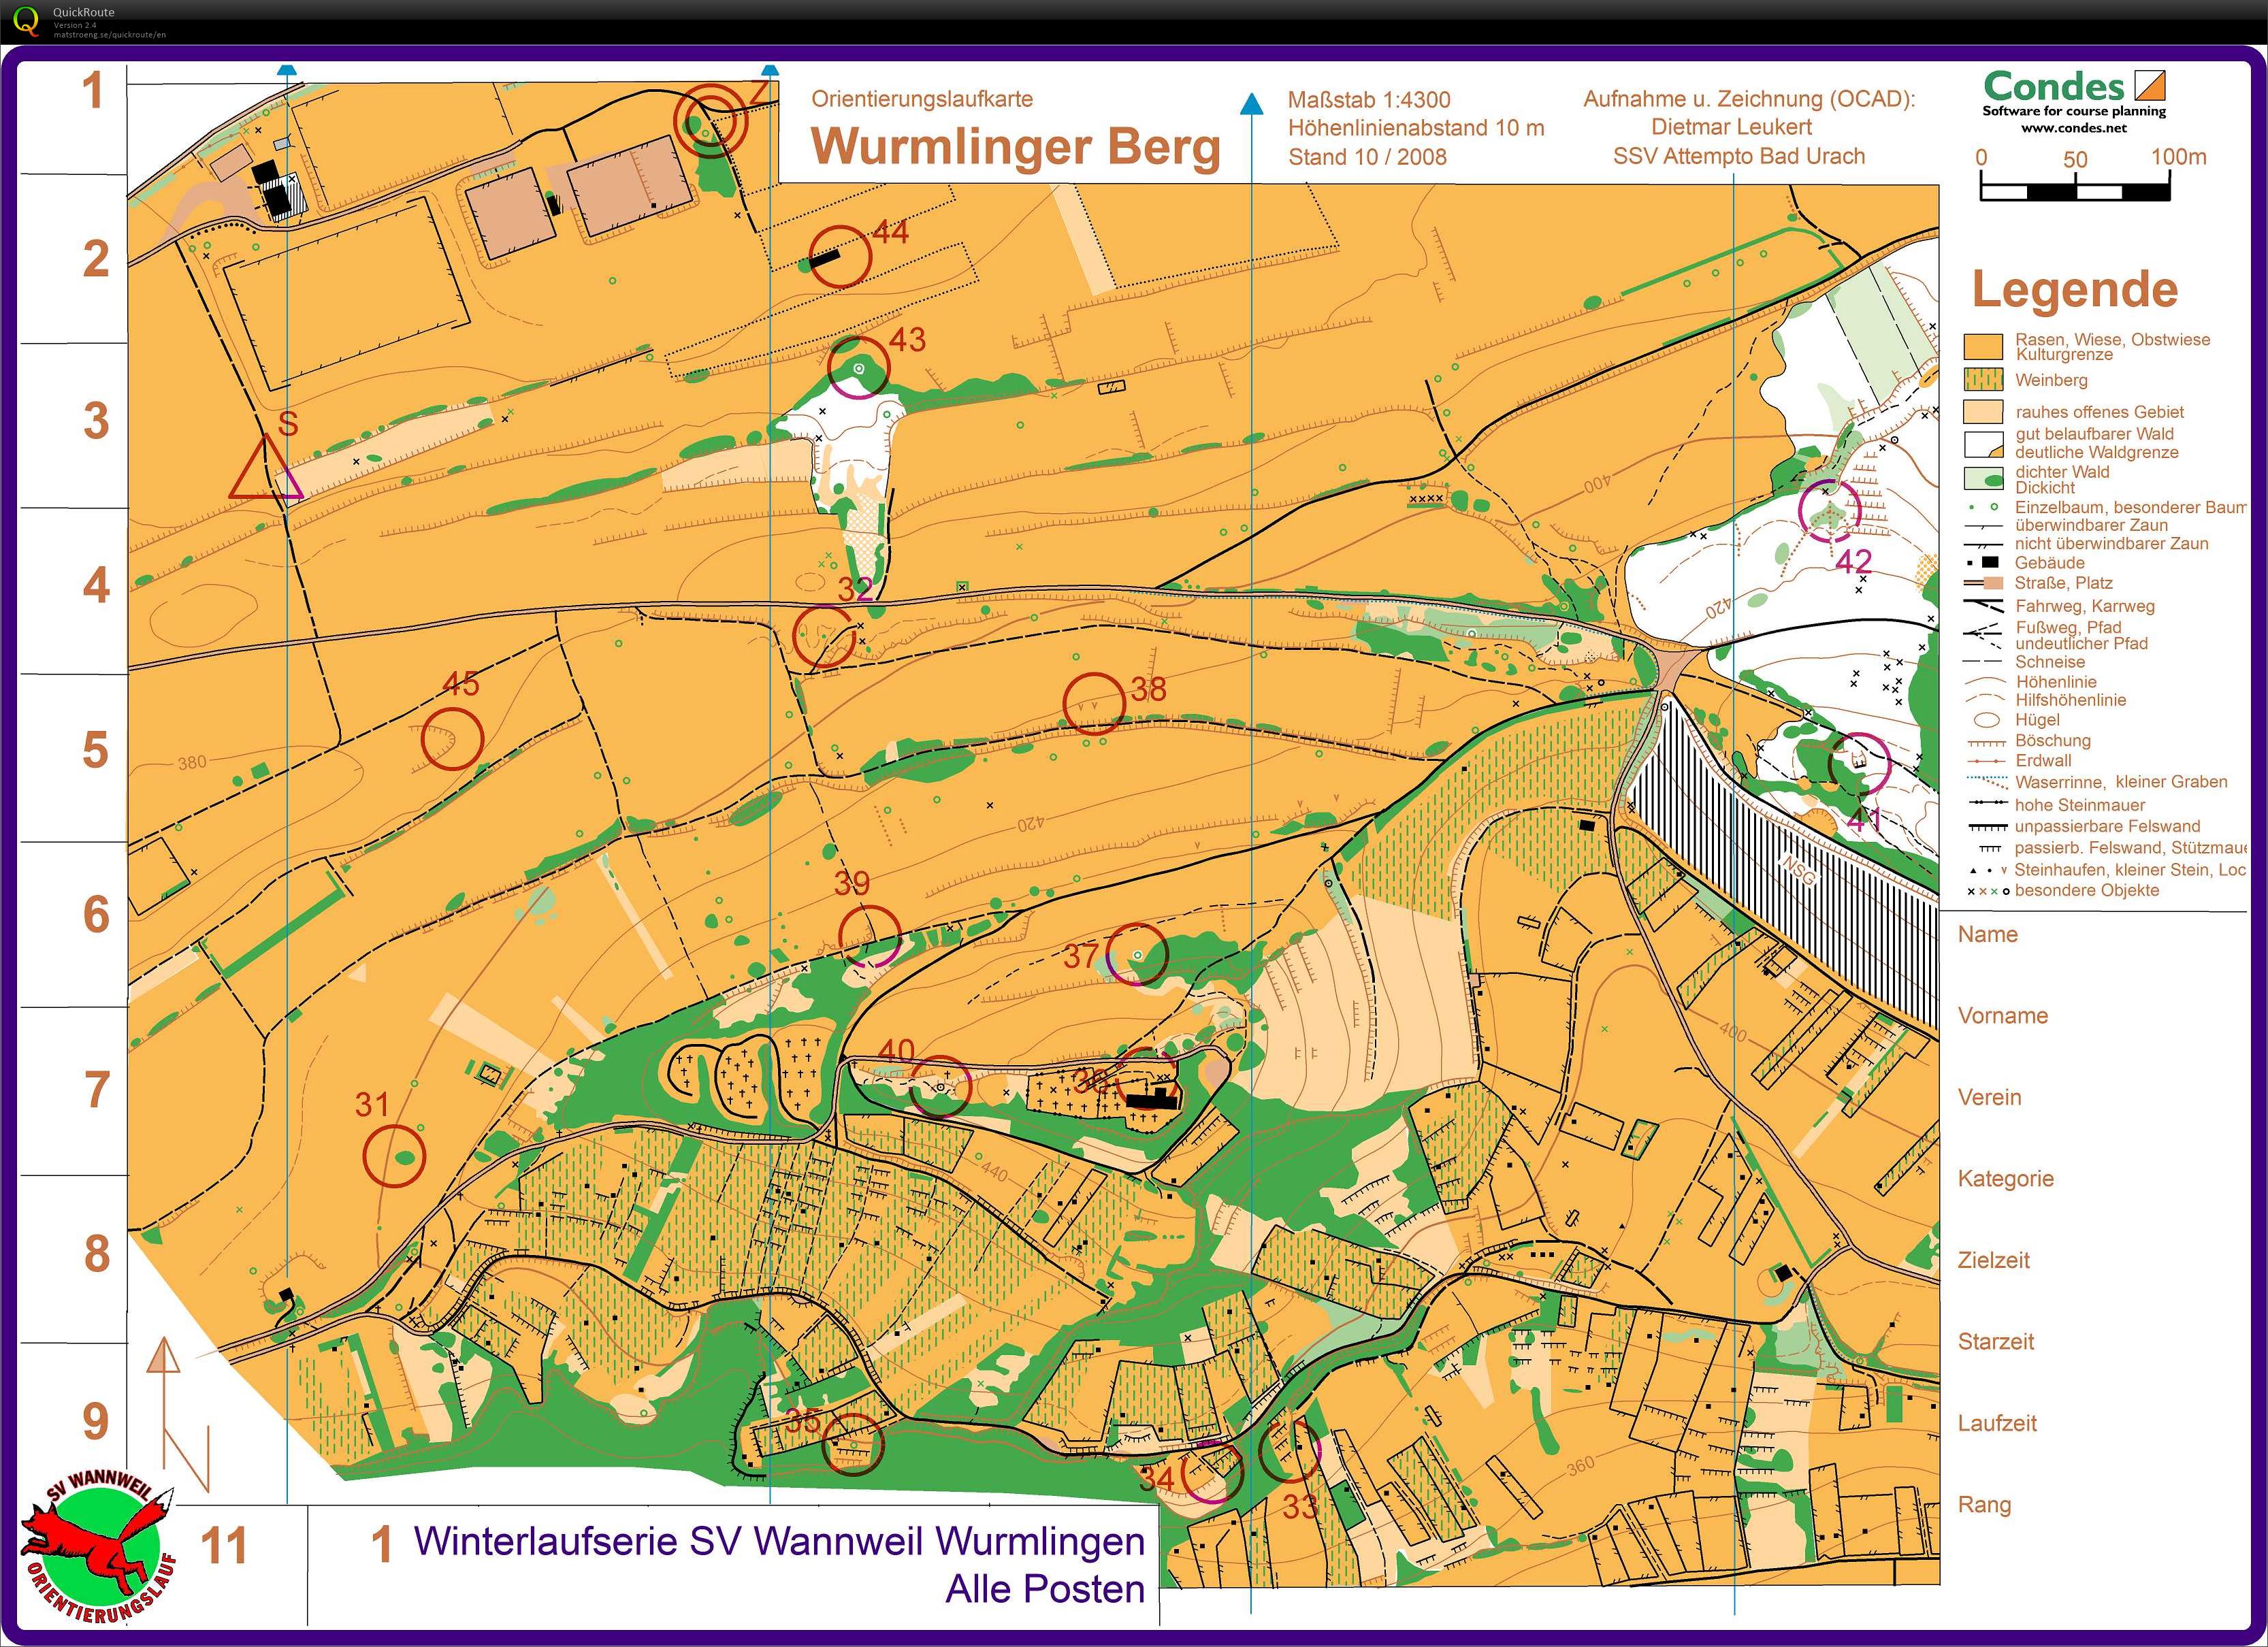 Wurmlingen Training set controls (21/01/2018)